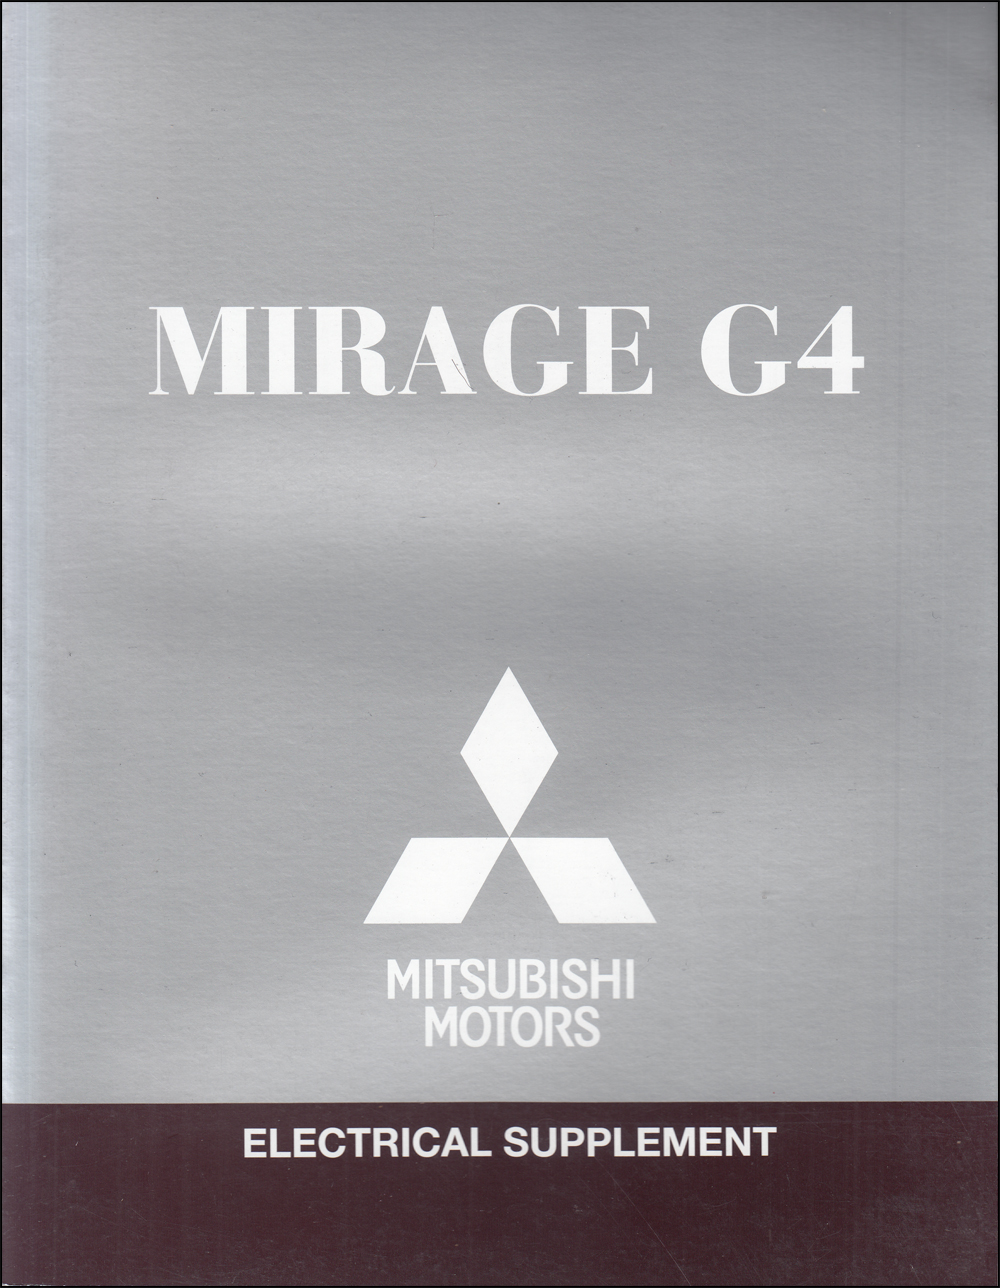 2020 Mitsubishi Mirage G4 Wiring Diagram Manual Original 